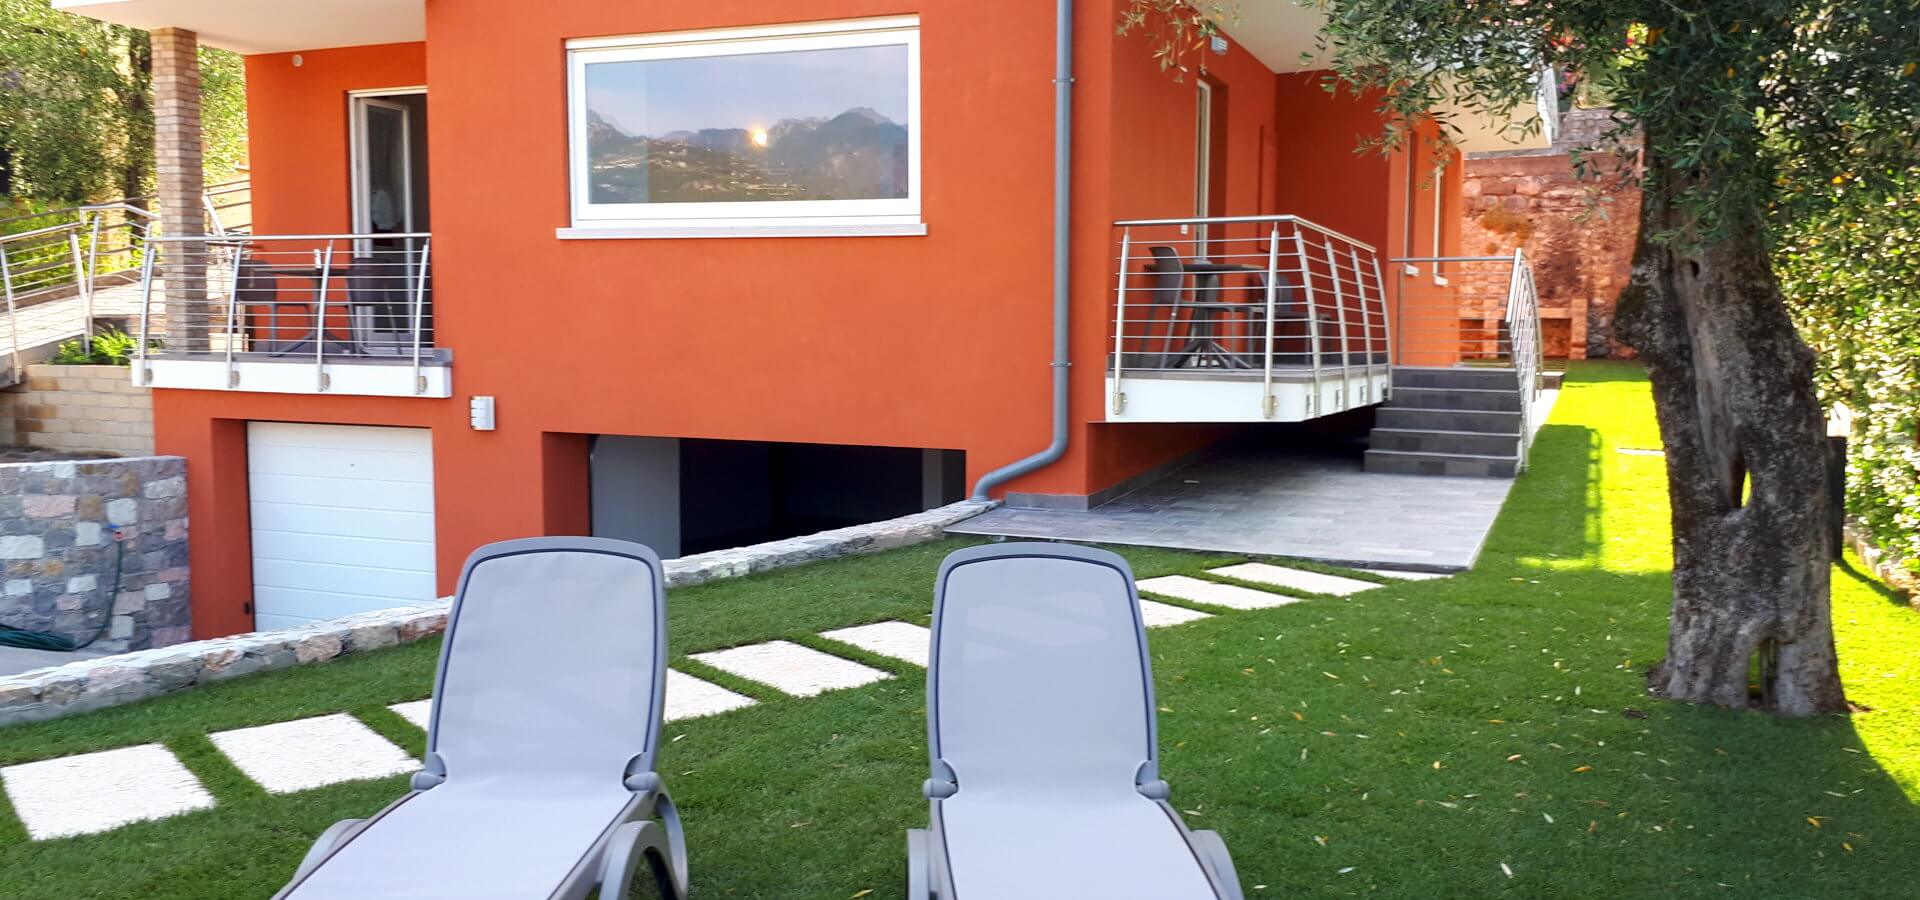 Fotos der Apartments Andreis in Malcesine mit Balkon und Blick auf den See, den Garten und den Pool